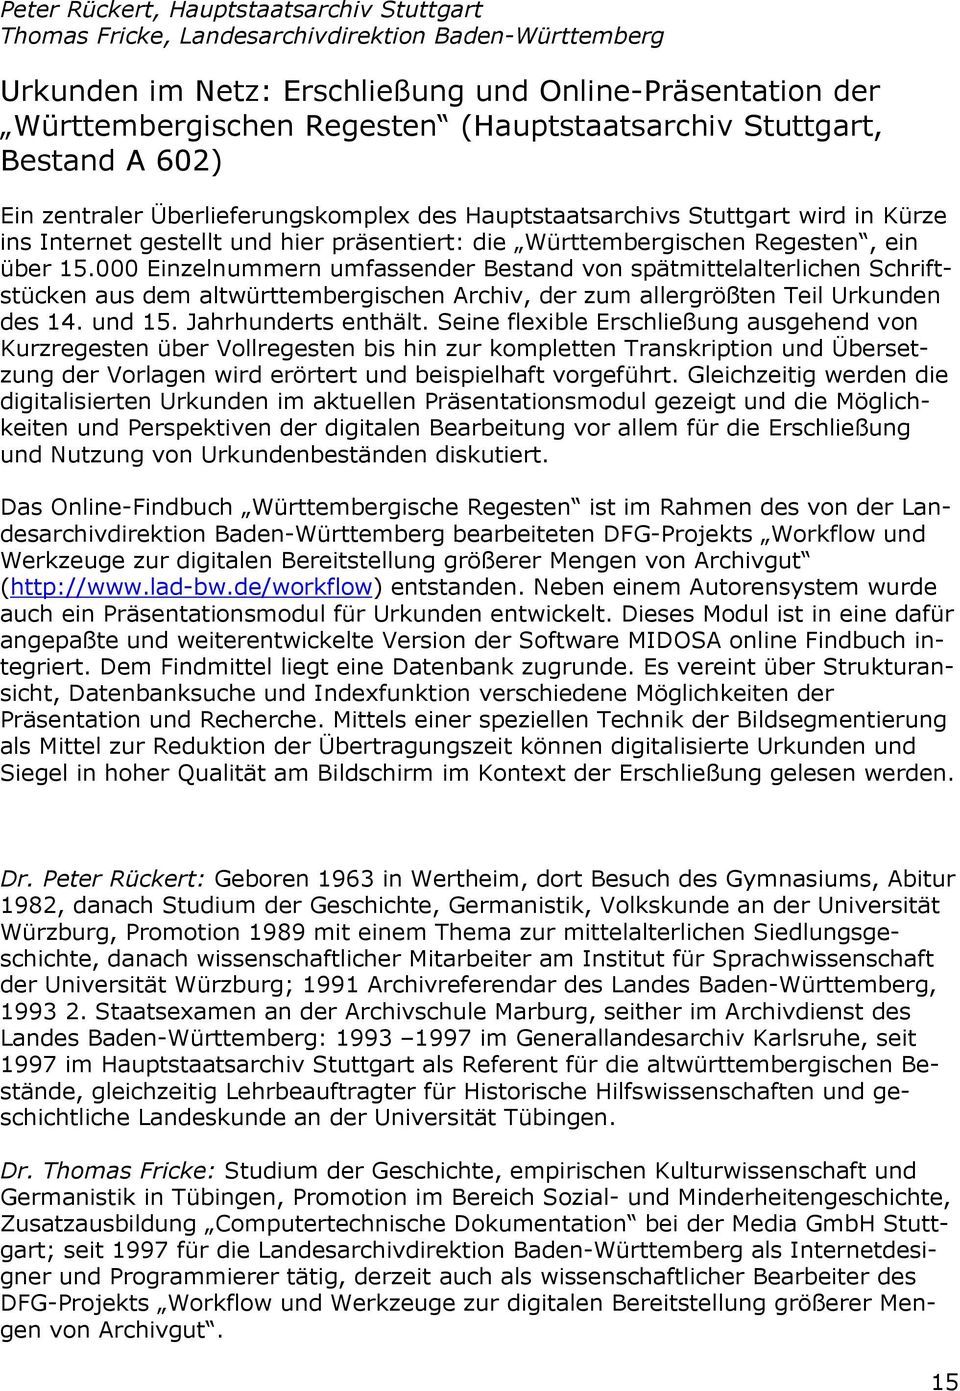 Regesten, ein über 15.000 Einzelnummern umfassender Bestand von spätmittelalterlichen Schriftstücken aus dem altwürttembergischen Archiv, der zum allergrößten Teil Urkunden des 14. und 15.